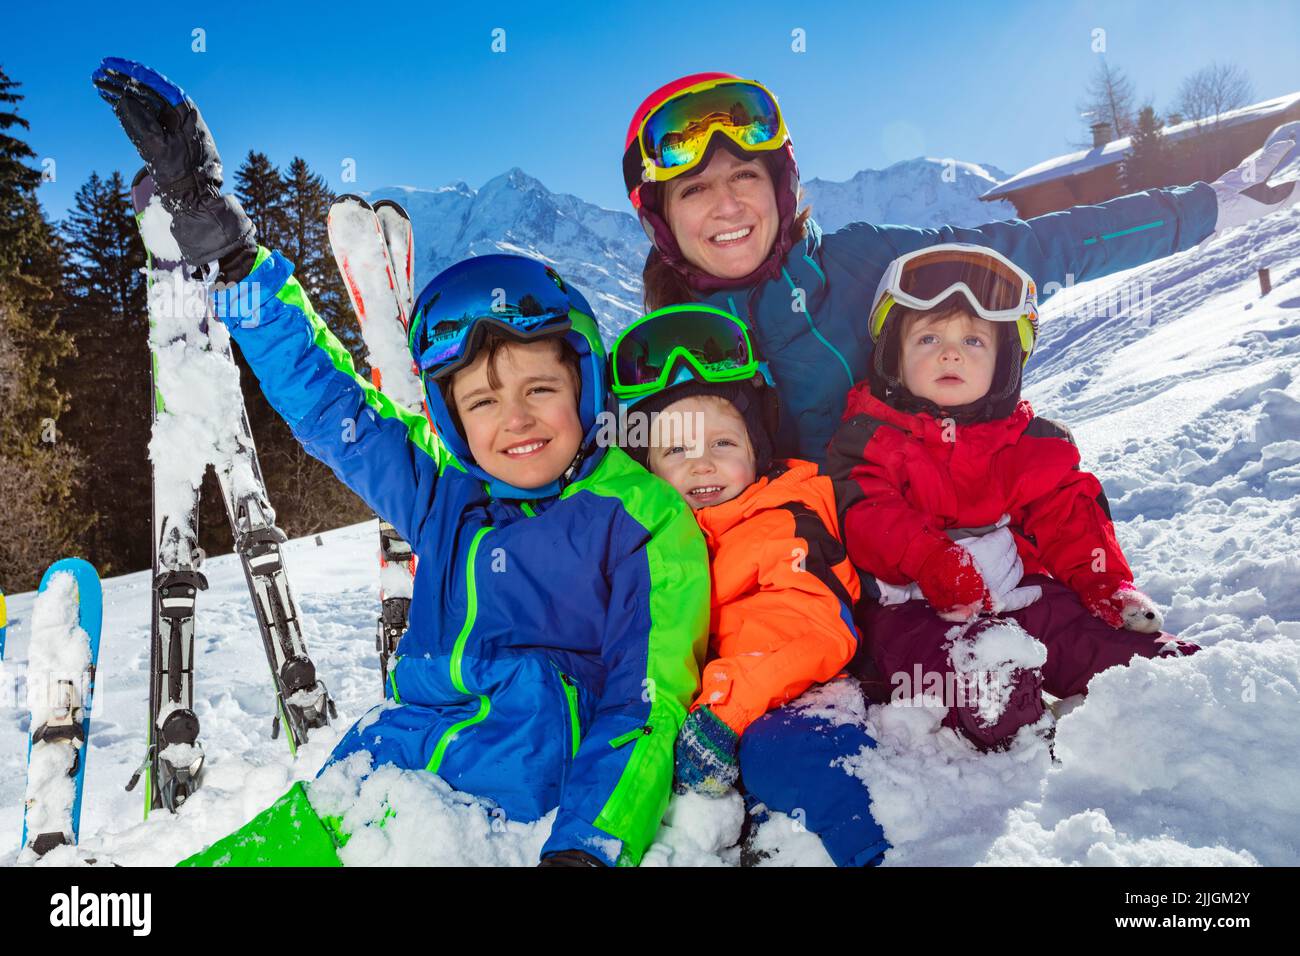 Los niños y la madre, la familia en vacaciones de esquí se sientan juntos en la nieve Foto de stock